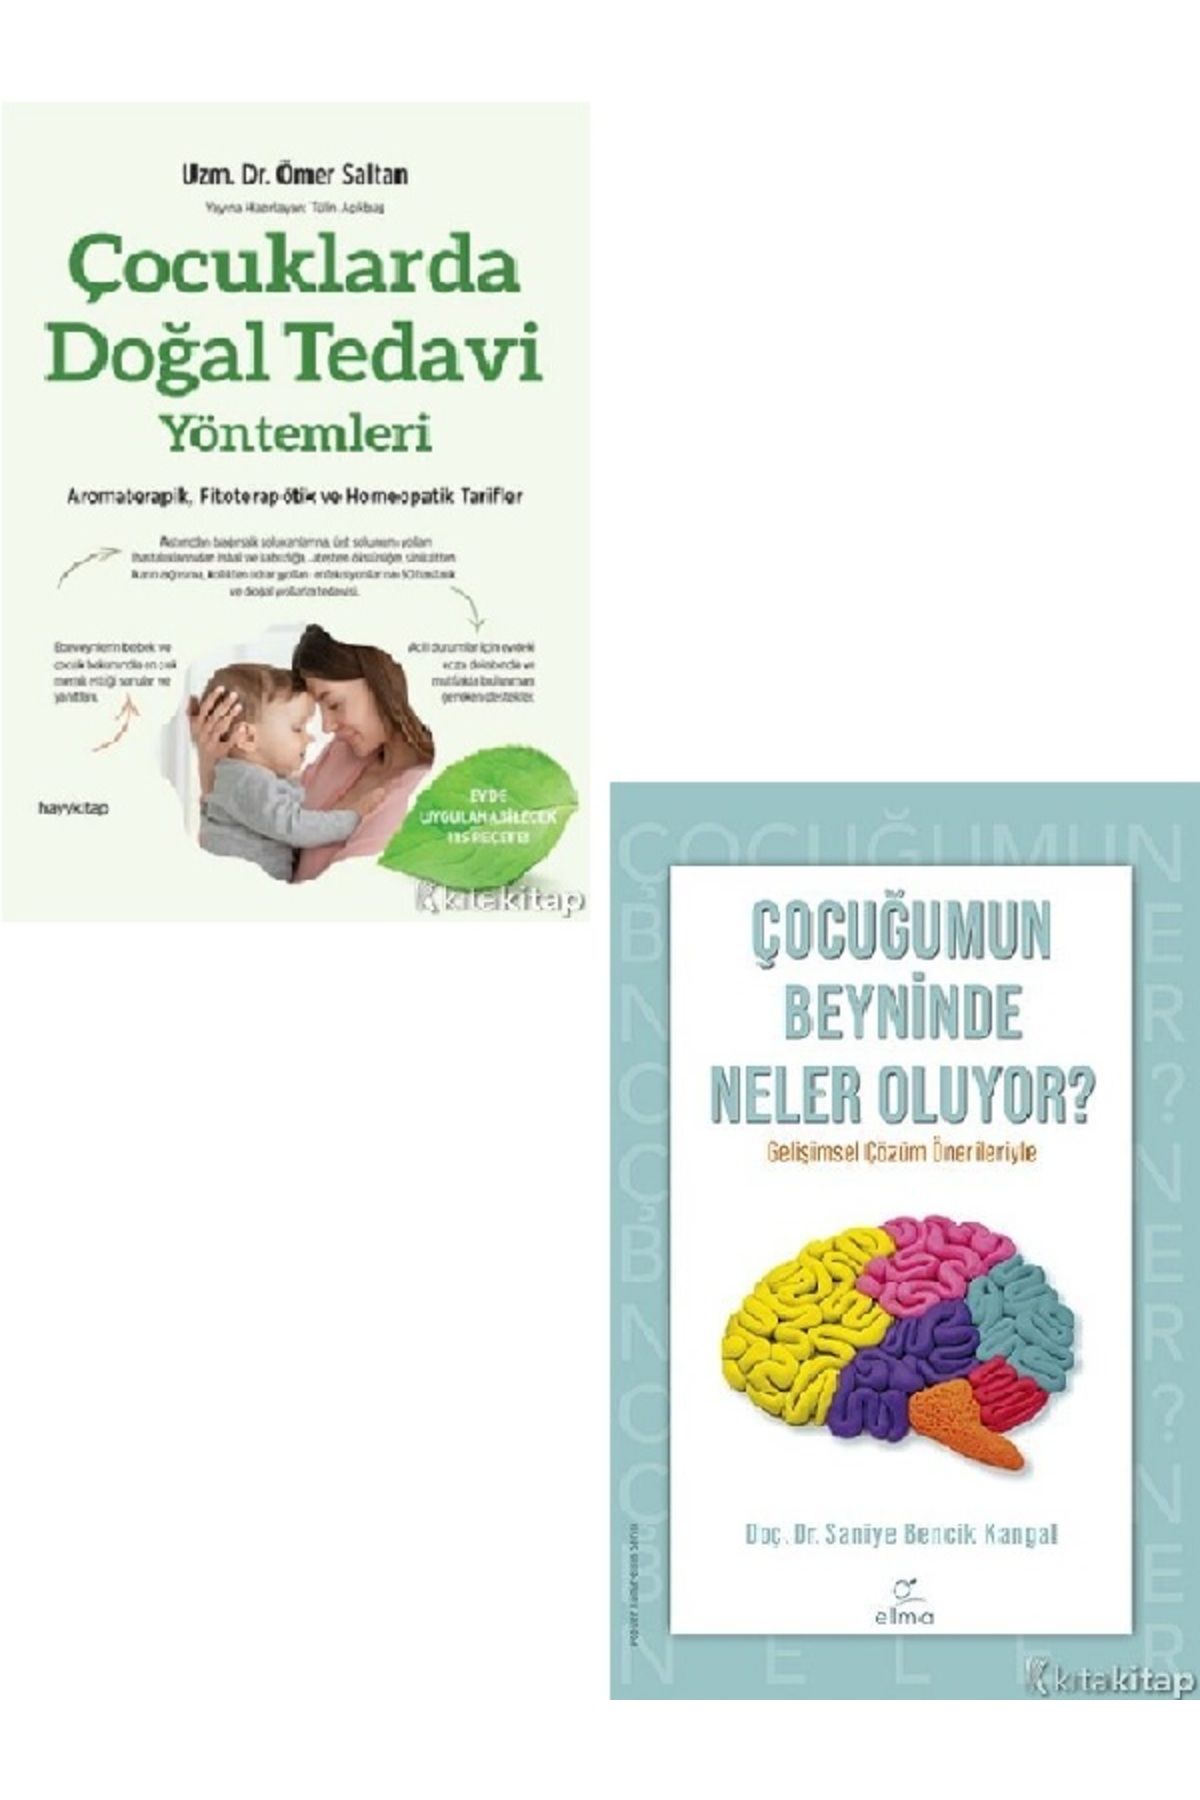 Kronik Kitap Çocuklarda Doğal Tedavi Yöntemleri-Çocuğumun Beyninde Neler Oluyor?-Saniye Bencik-Ömer Saltan 2 KİTA